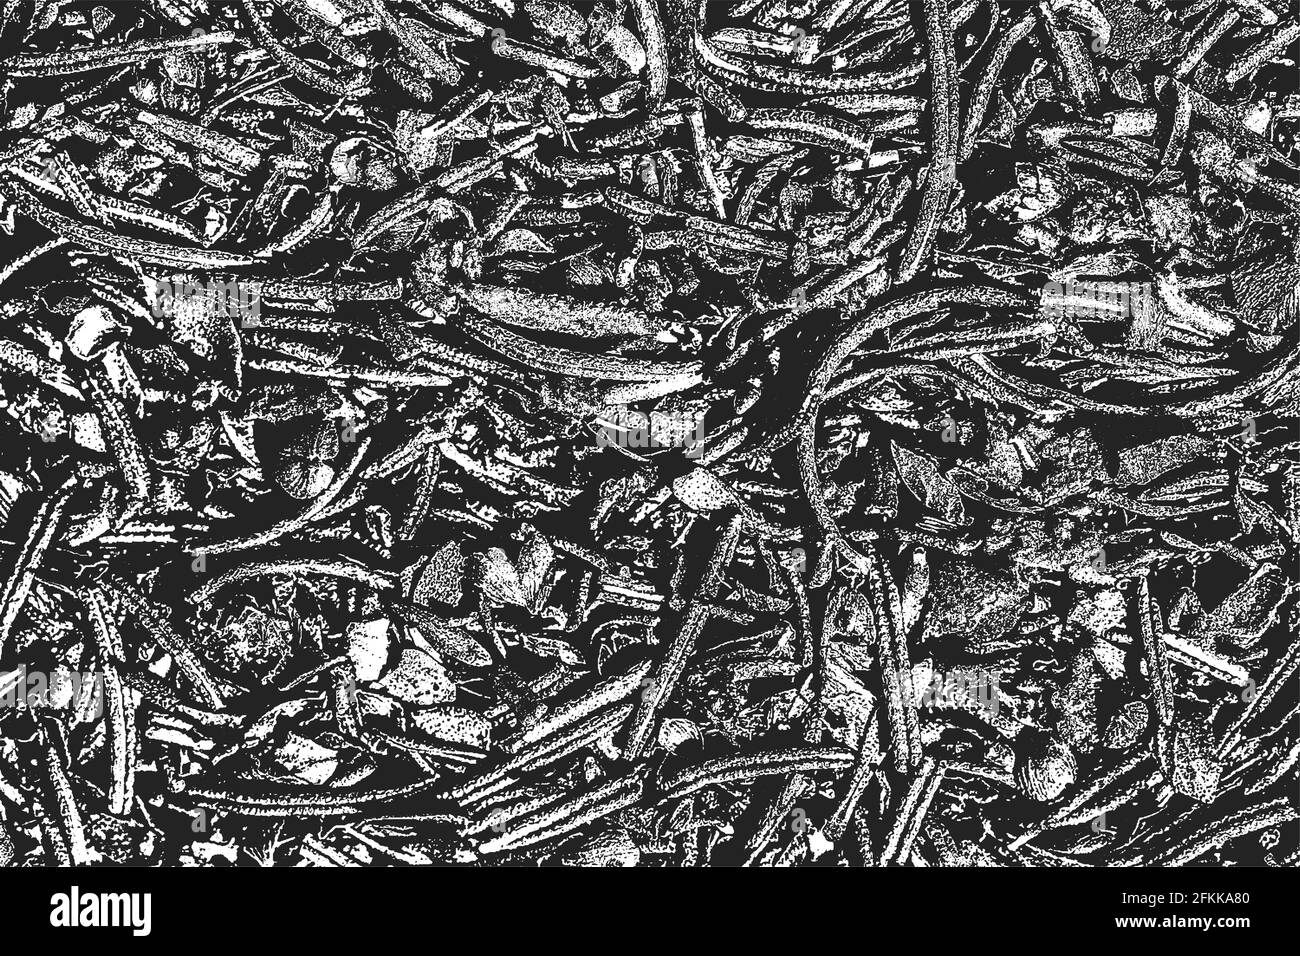 Verzweifelte Overlay-Textur von Bohnen-Schoten, Pflanzenstämmen, trockenen Blättern. Grunge schwarz und weiß Hintergrund. Abstrakte Halbton-Vektor-Illustration Stock Vektor